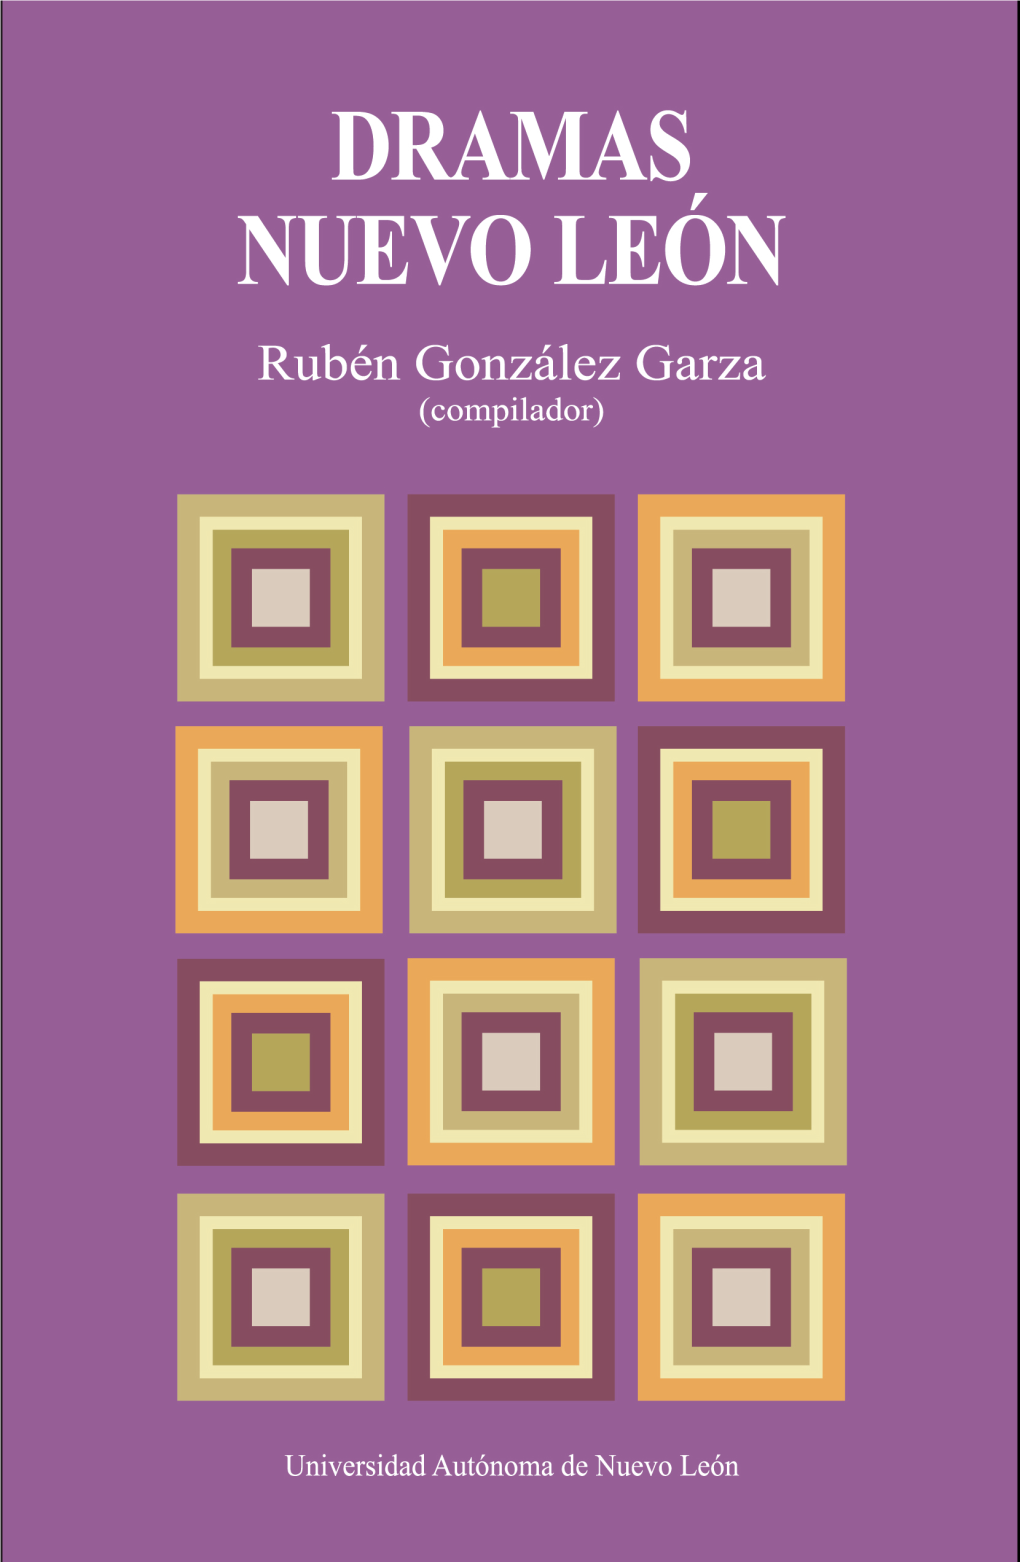 Compilación Rubén González Garza